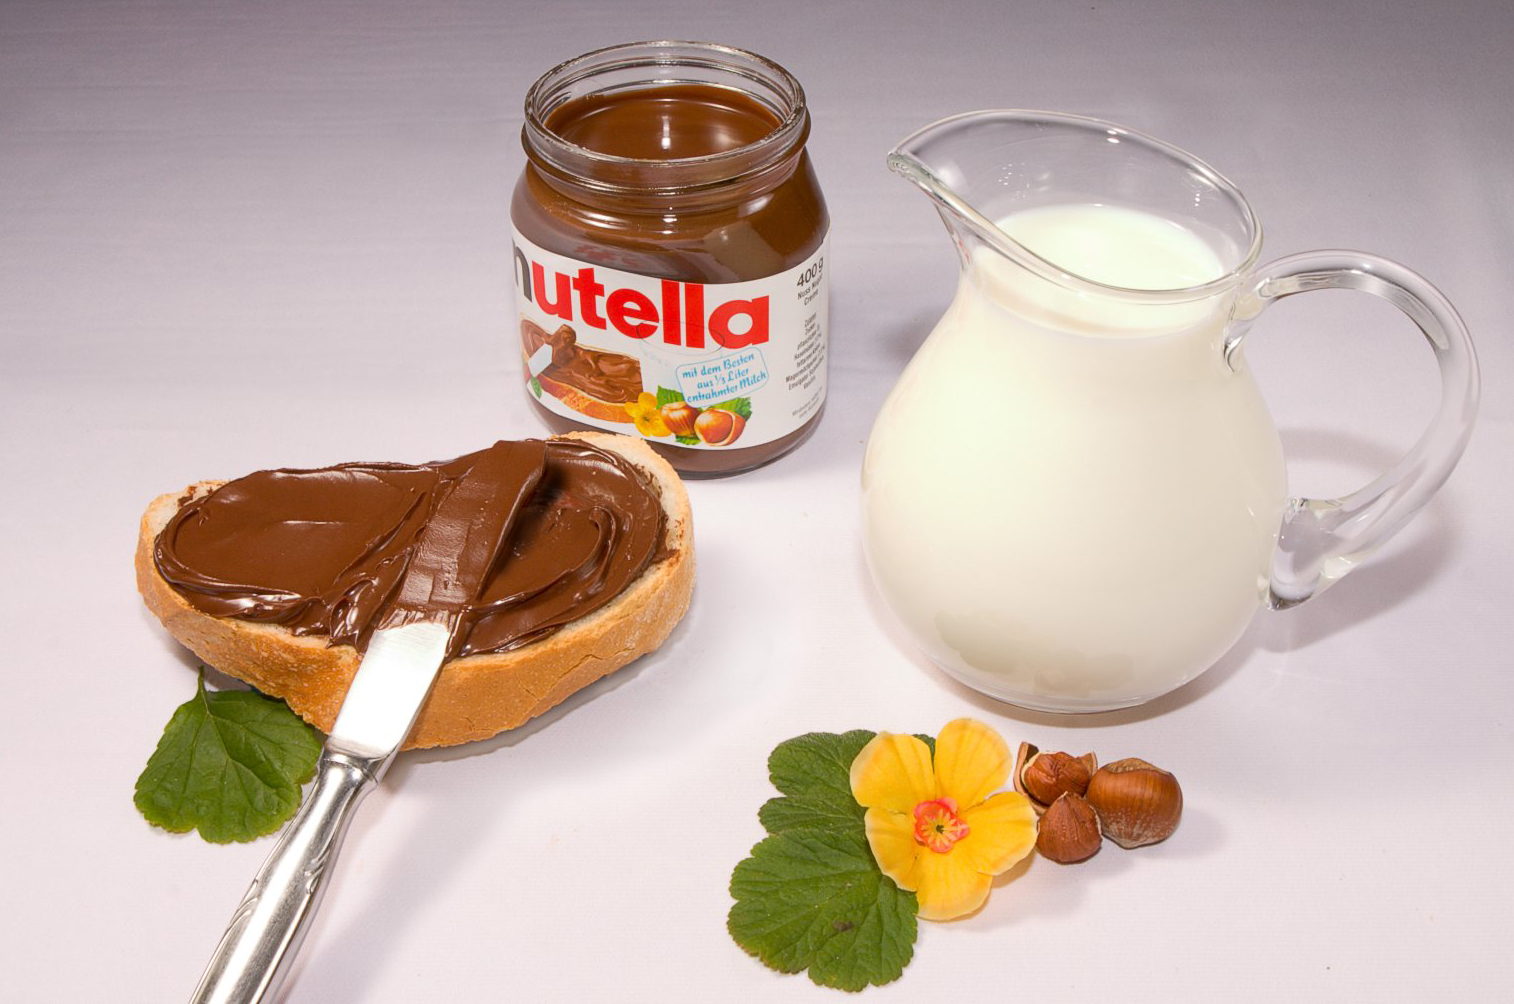 La Nutella cambia la sua ricetta: nasce l'hashtag #boycottNutella